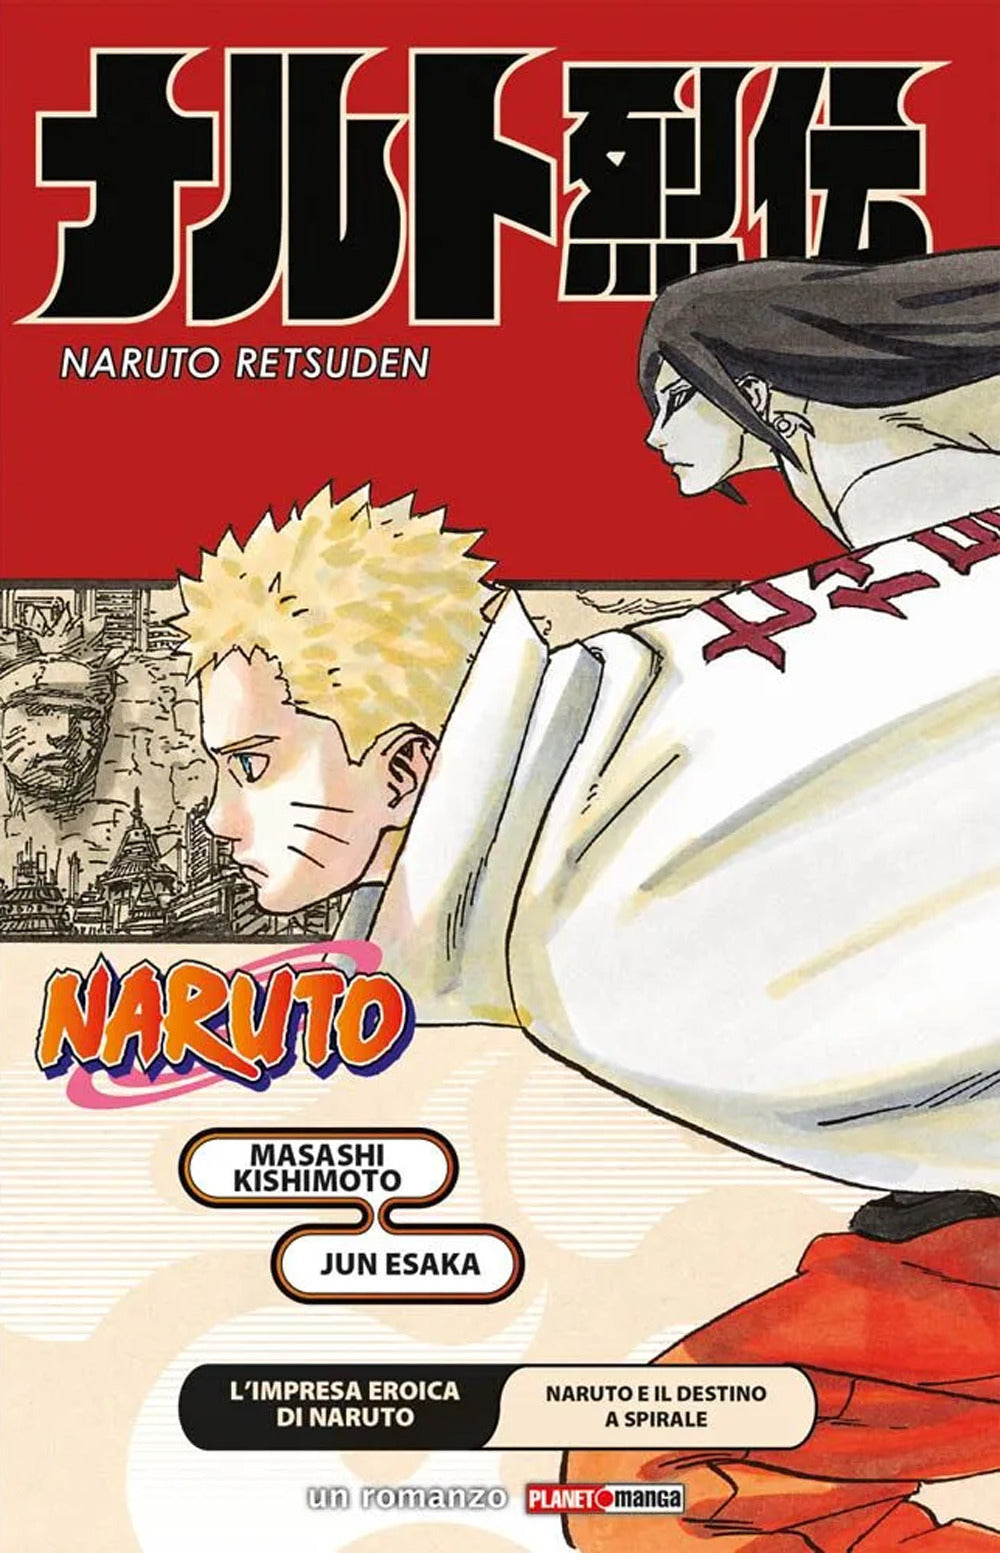 L'impresa eroica di Naruto. Naruto e il destino a spirale. Naruto.